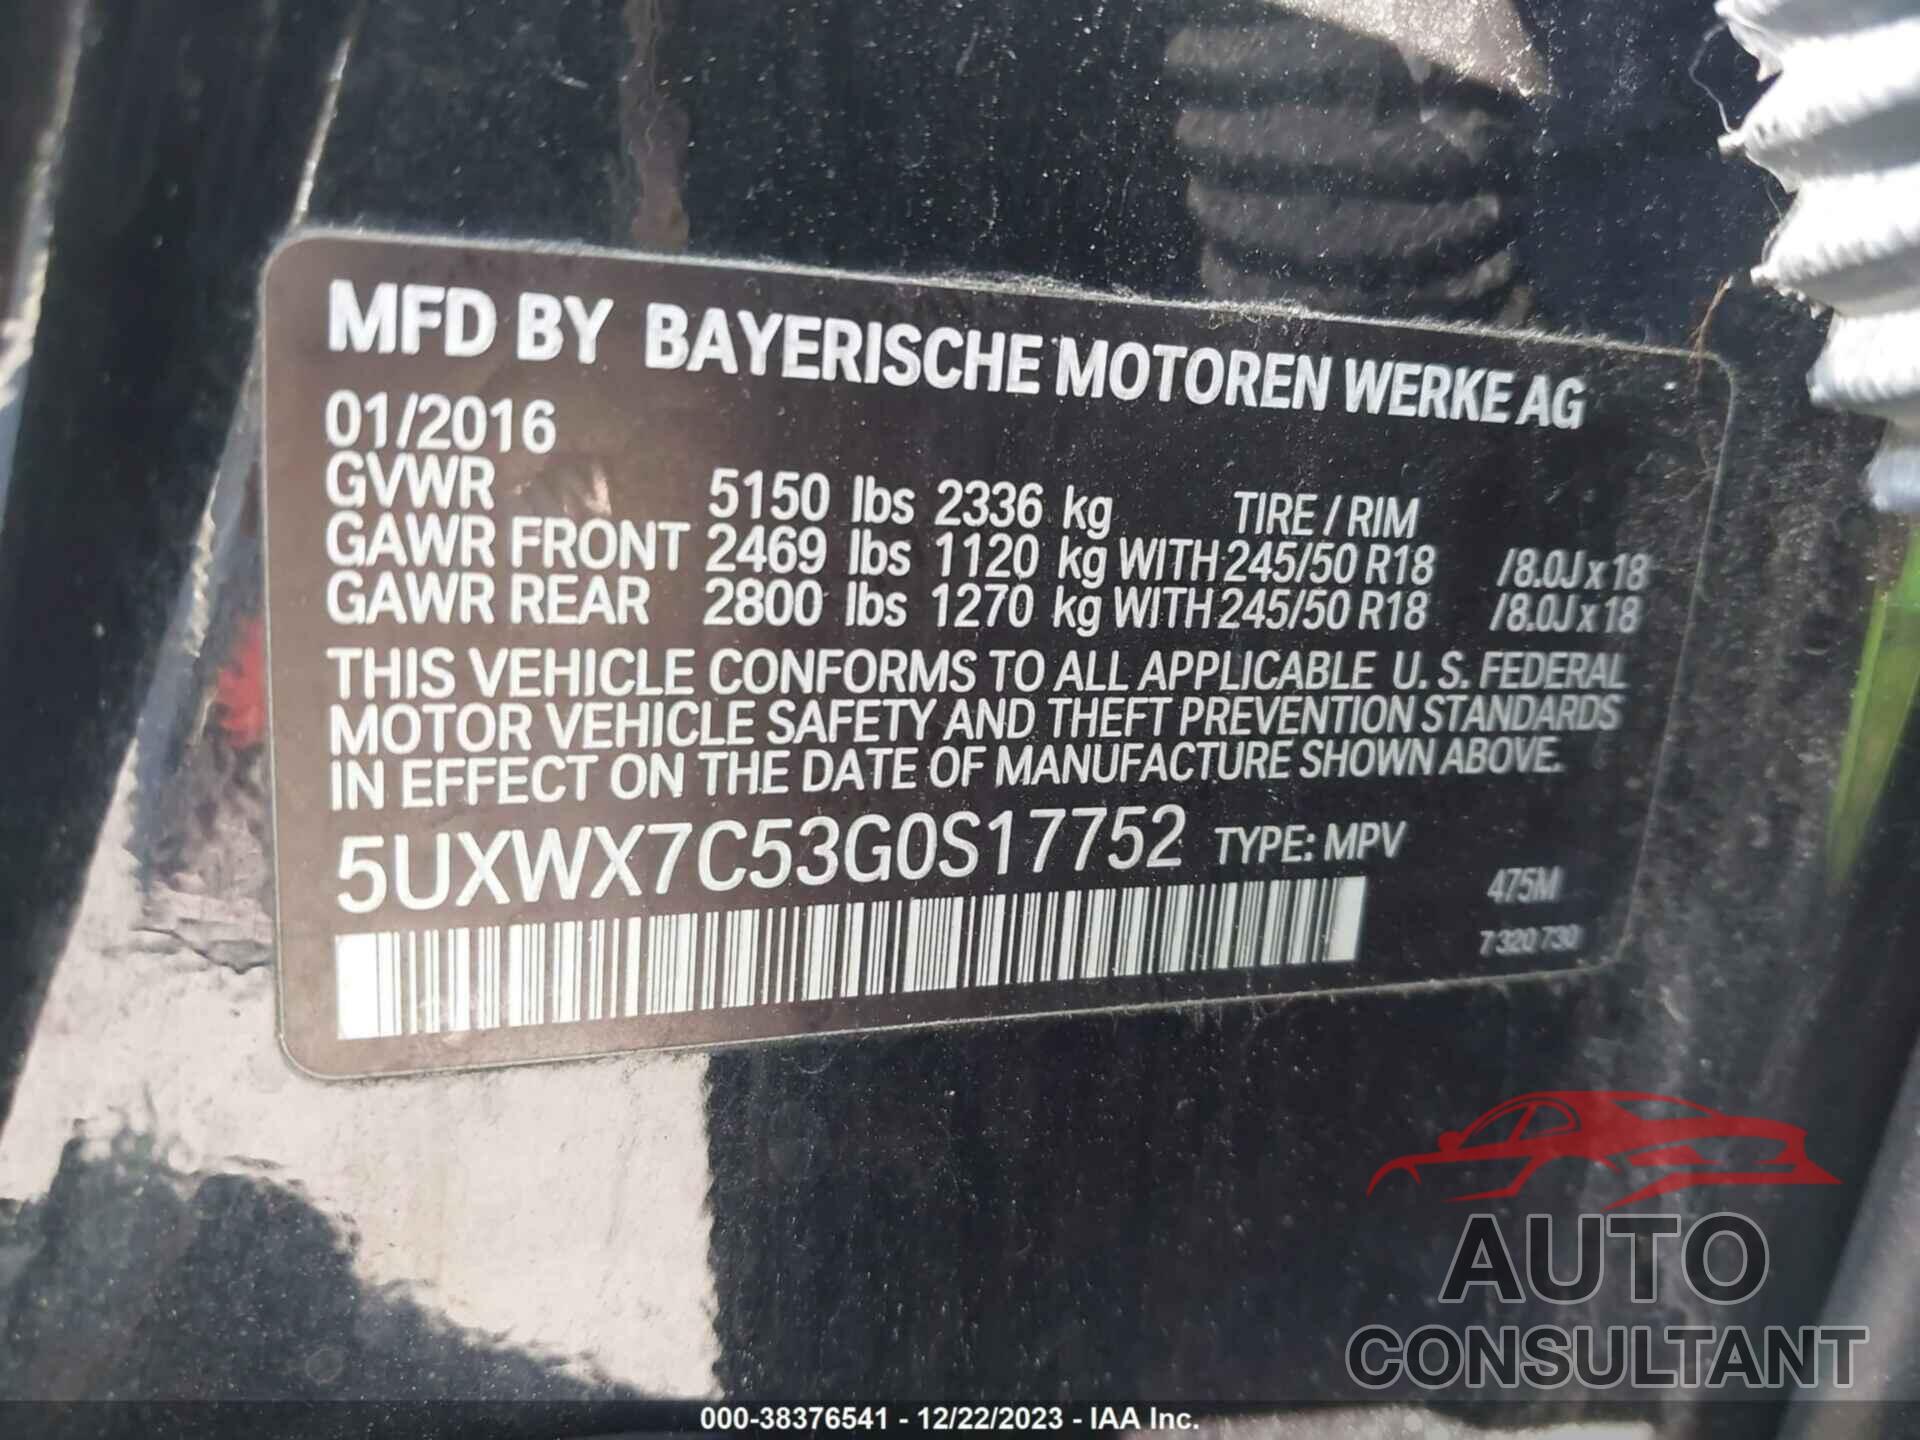 BMW X3 2016 - 5UXWX7C53G0S17752